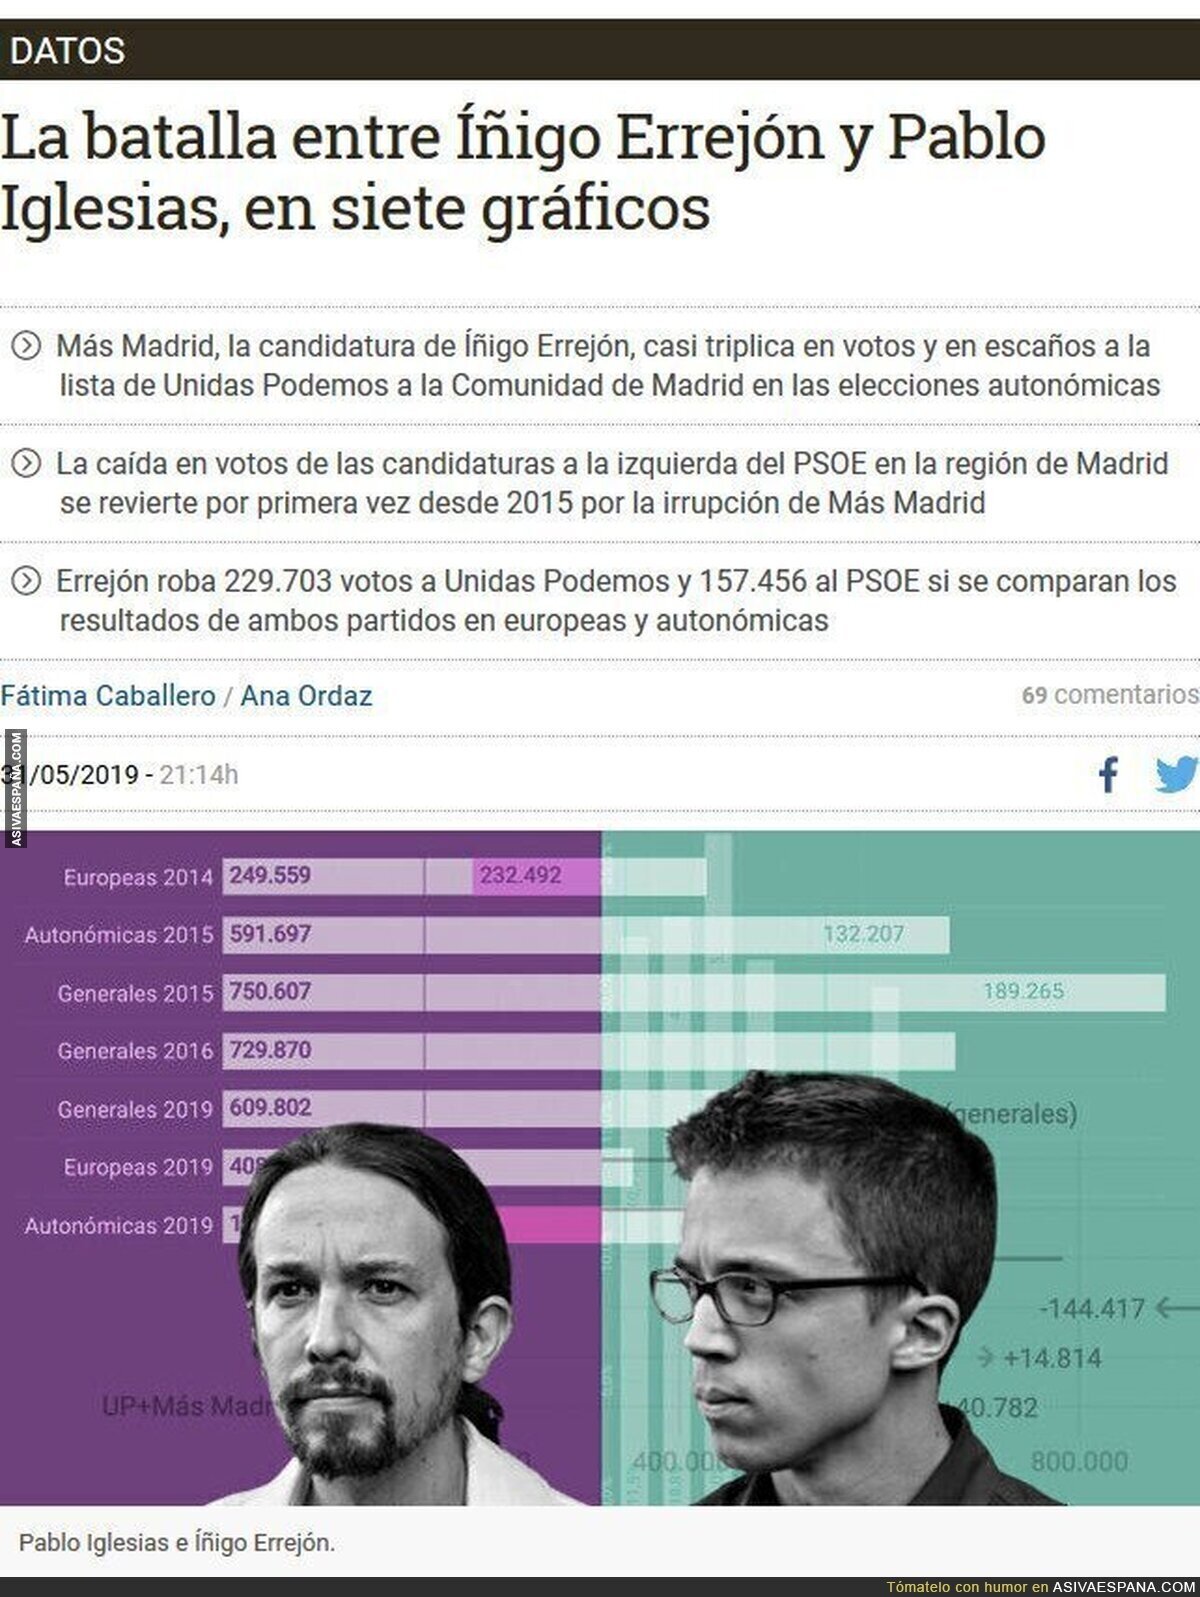 Explicación gráfica del desplome de Unidas Podemos y el PSOE en Madrid